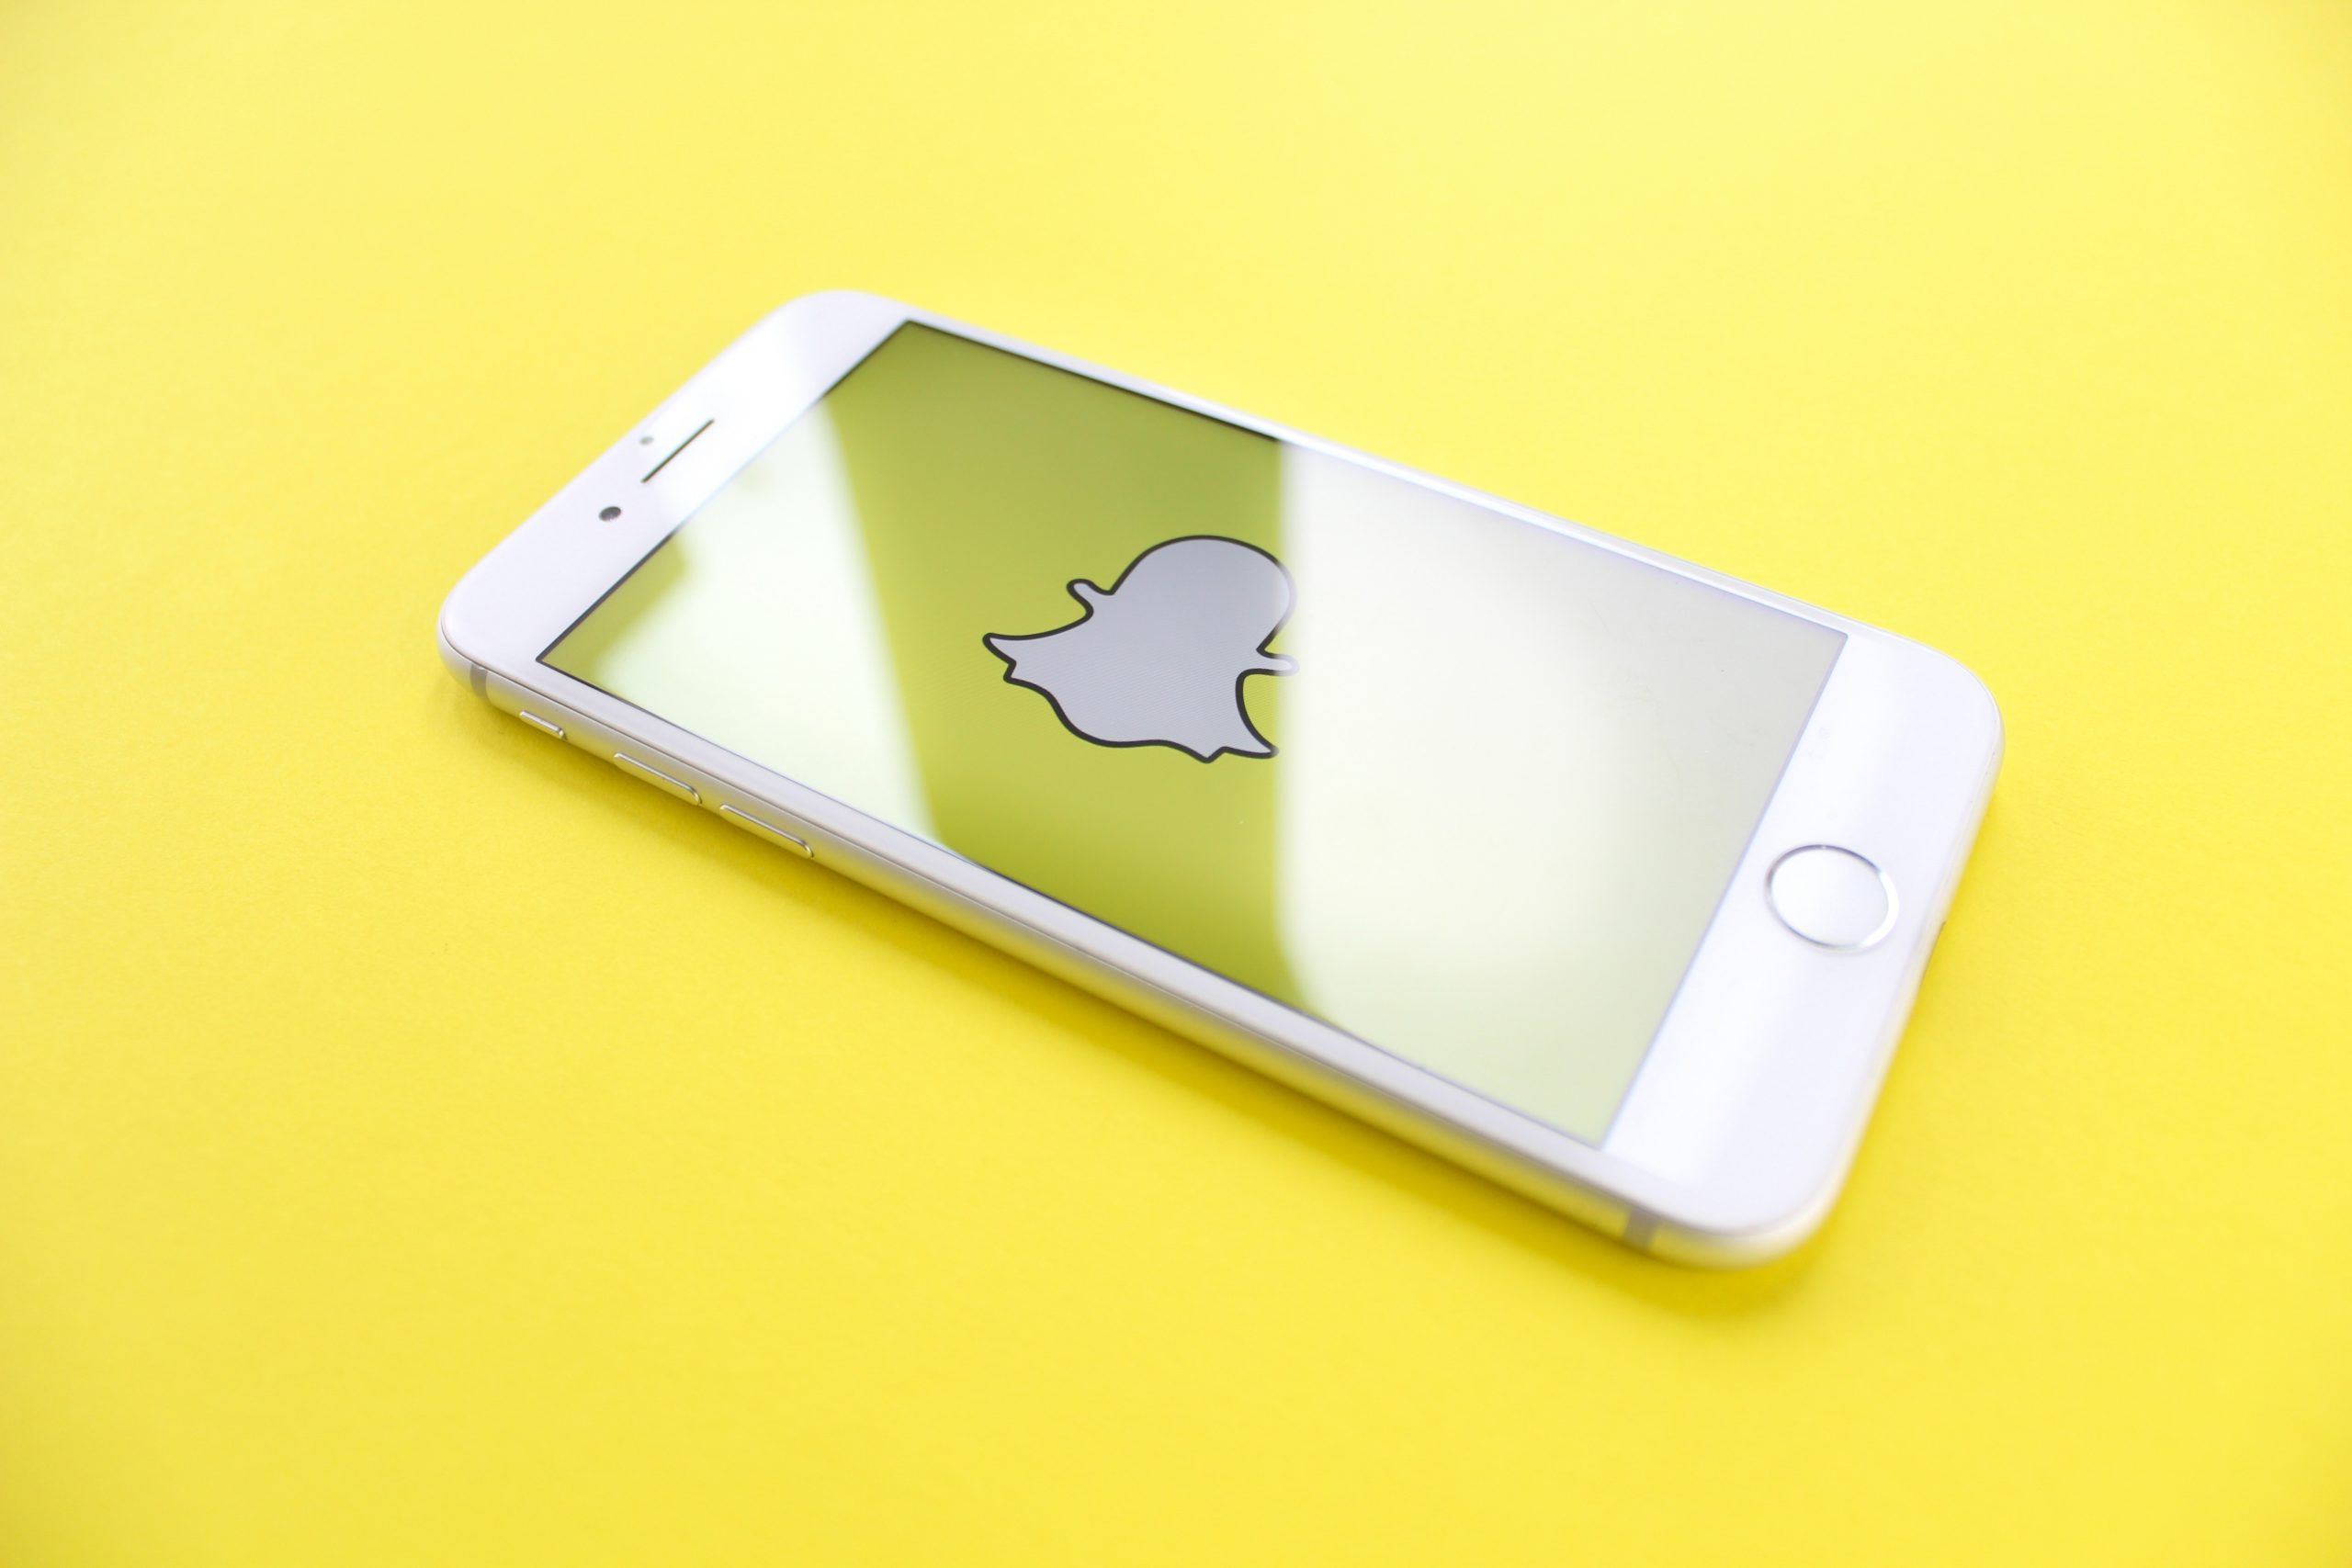 Snapchat Nedir? Nasıl Kullanılır?